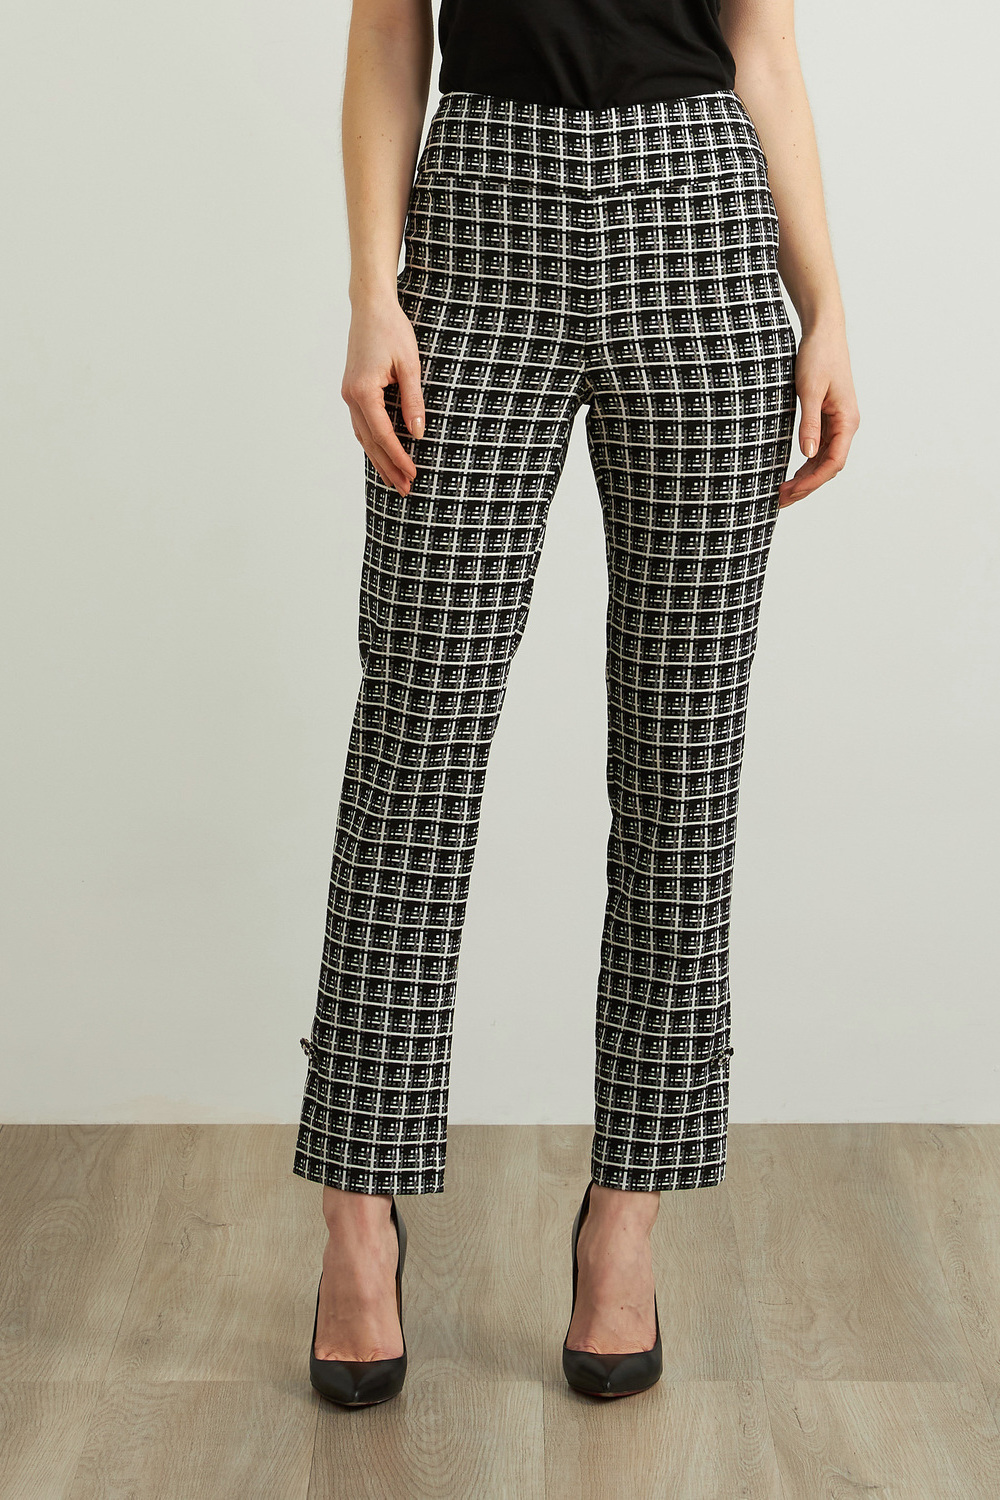 Joseph Ribkoff Plaid Jacquard Pants Style 213439. Black/white